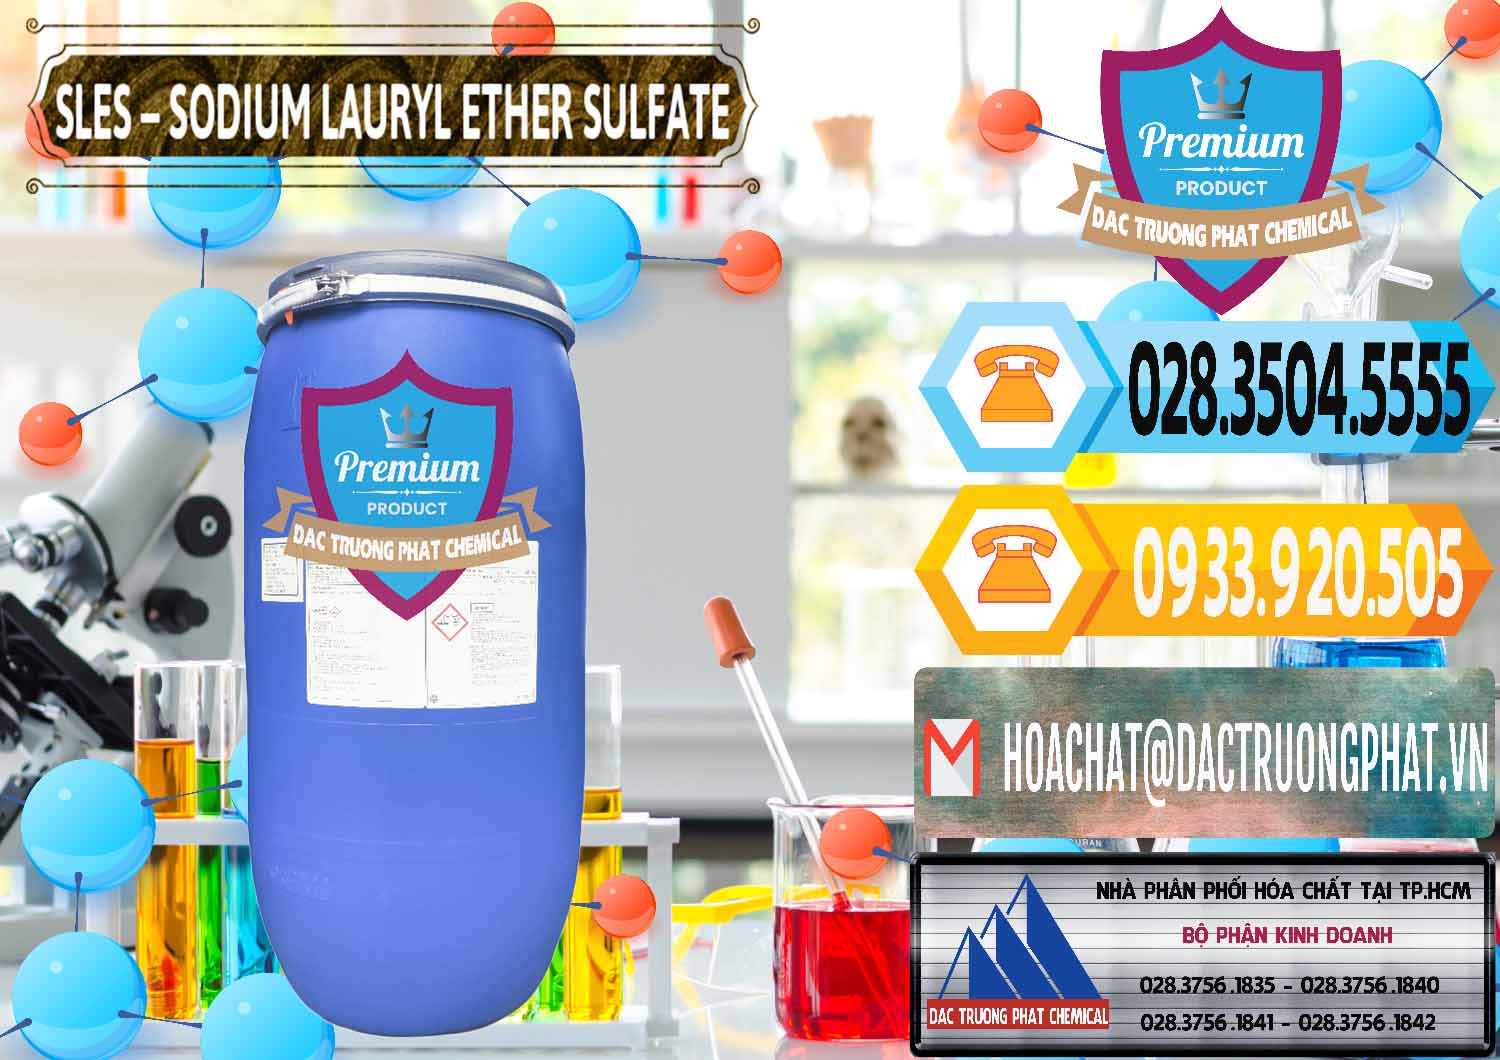 Nơi cung ứng _ bán Chất Tạo Bọt Sles - Sodium Lauryl Ether Sulphate Kao Indonesia - 0046 - Cty chuyên nhập khẩu & cung cấp hóa chất tại TP.HCM - hoachattayrua.net